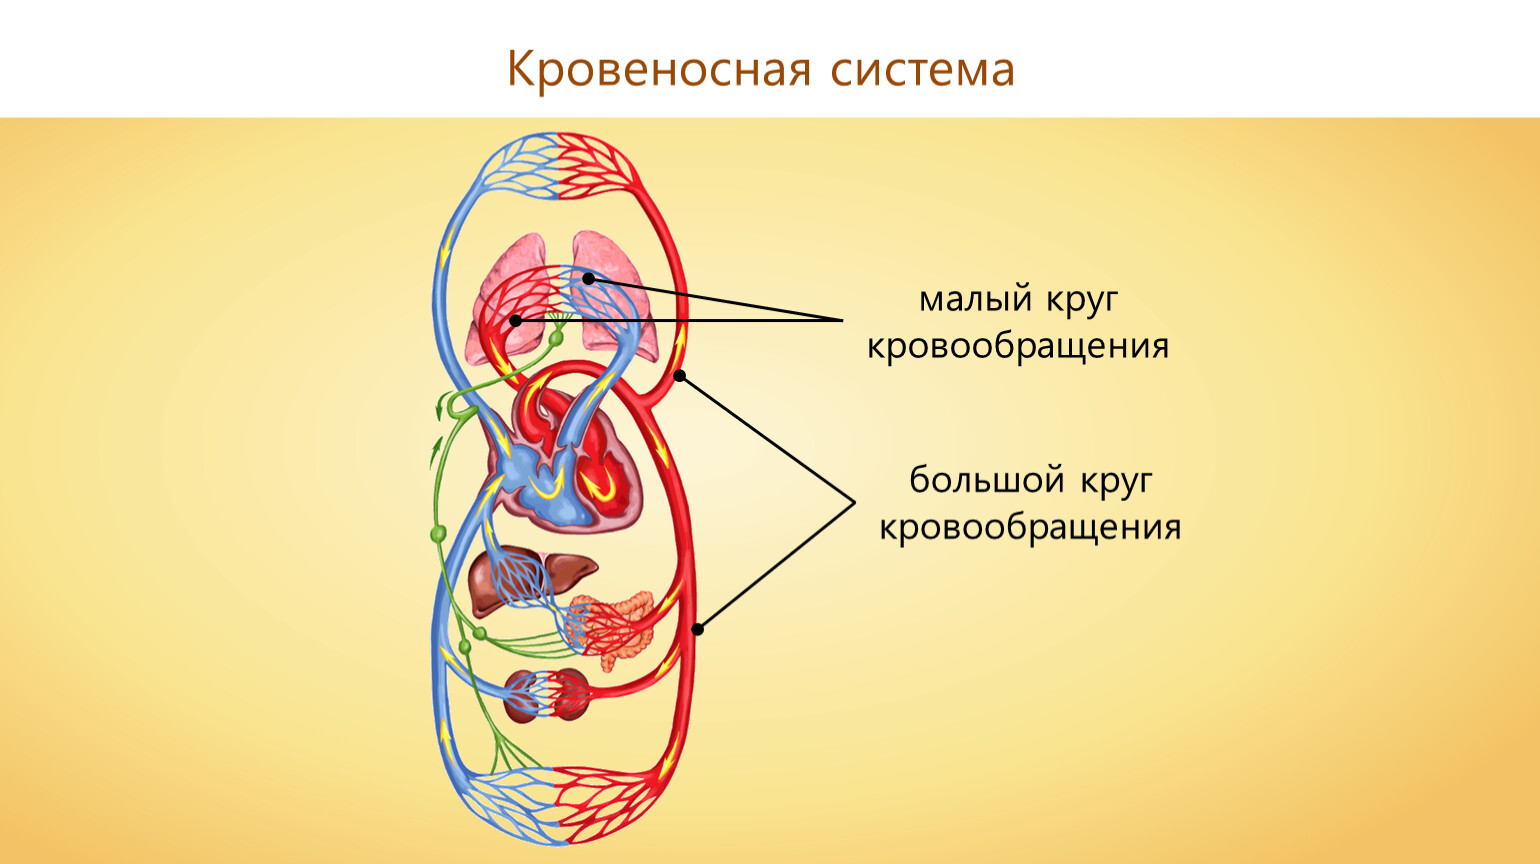 Круги кровообращения червей. Малый круг и большой круг кровообращения. Кровеносная система малый и большой круг. Малый круг кровообращения и большой круг кровообращения. Биология 9 класс большой и малый круги кровообращения.